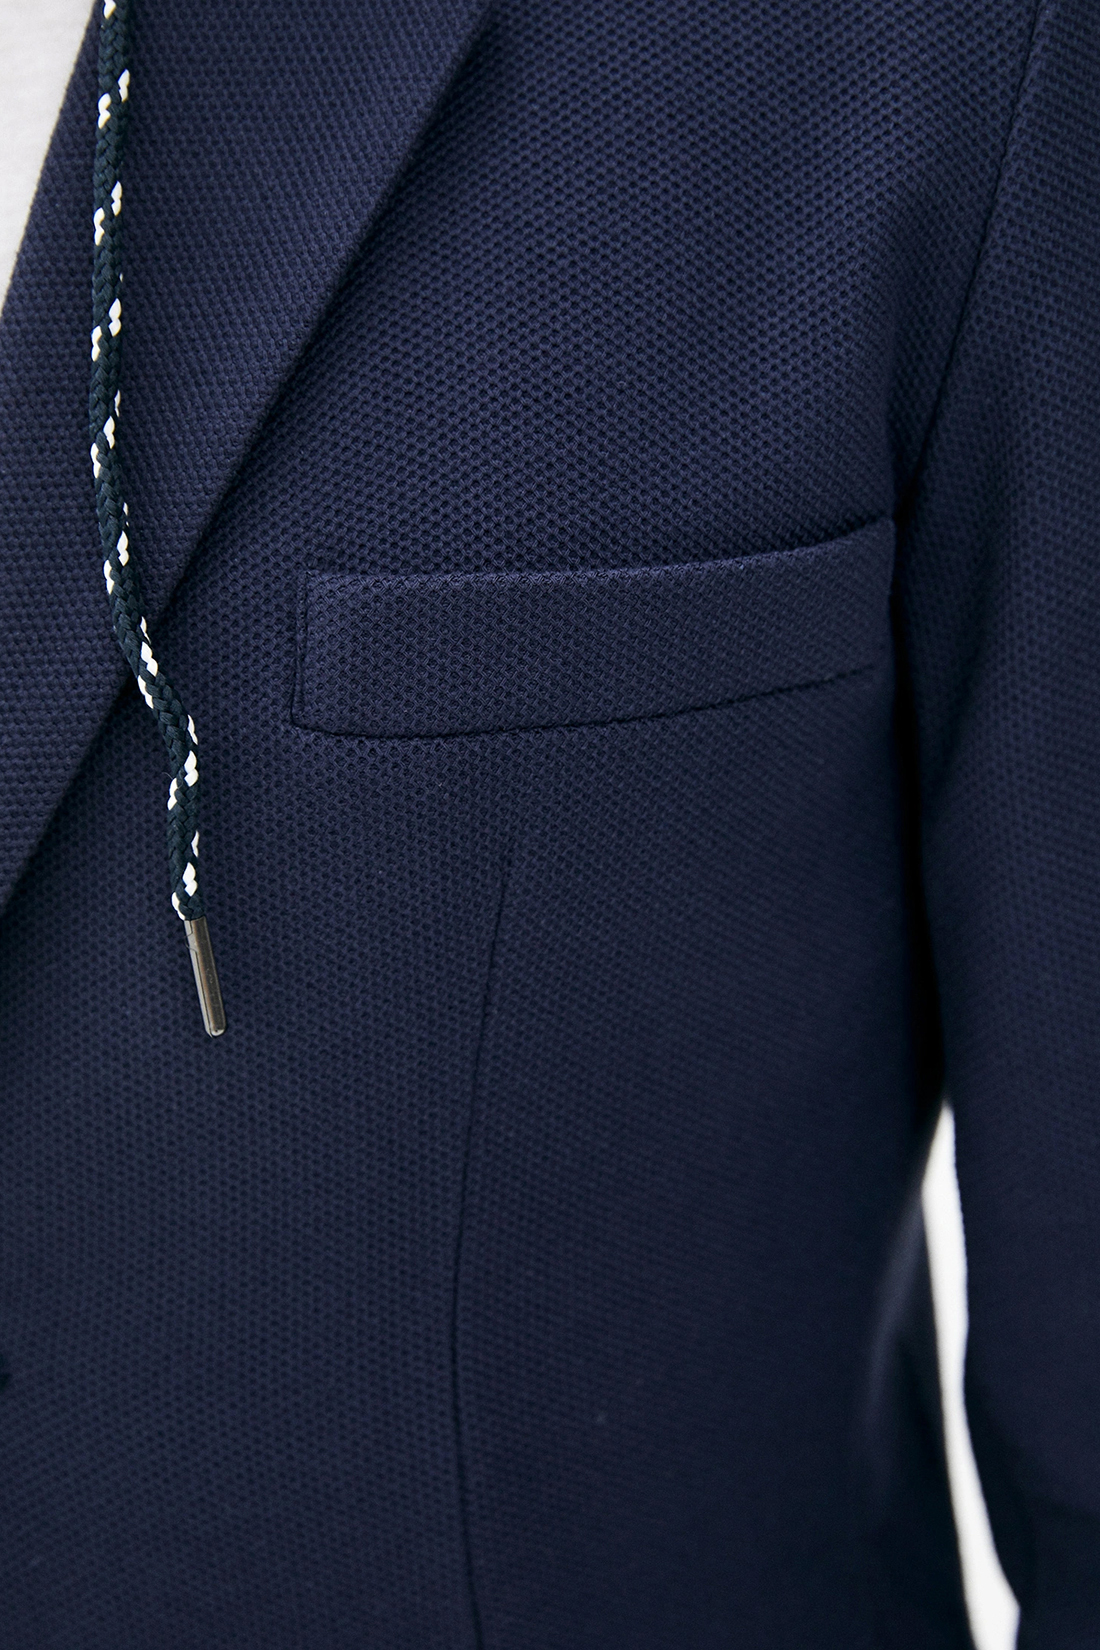 Пиджак с капюшоном (арт. baon B620005), размер XL, цвет синий Пиджак с капюшоном (арт. baon B620005) - фото 3